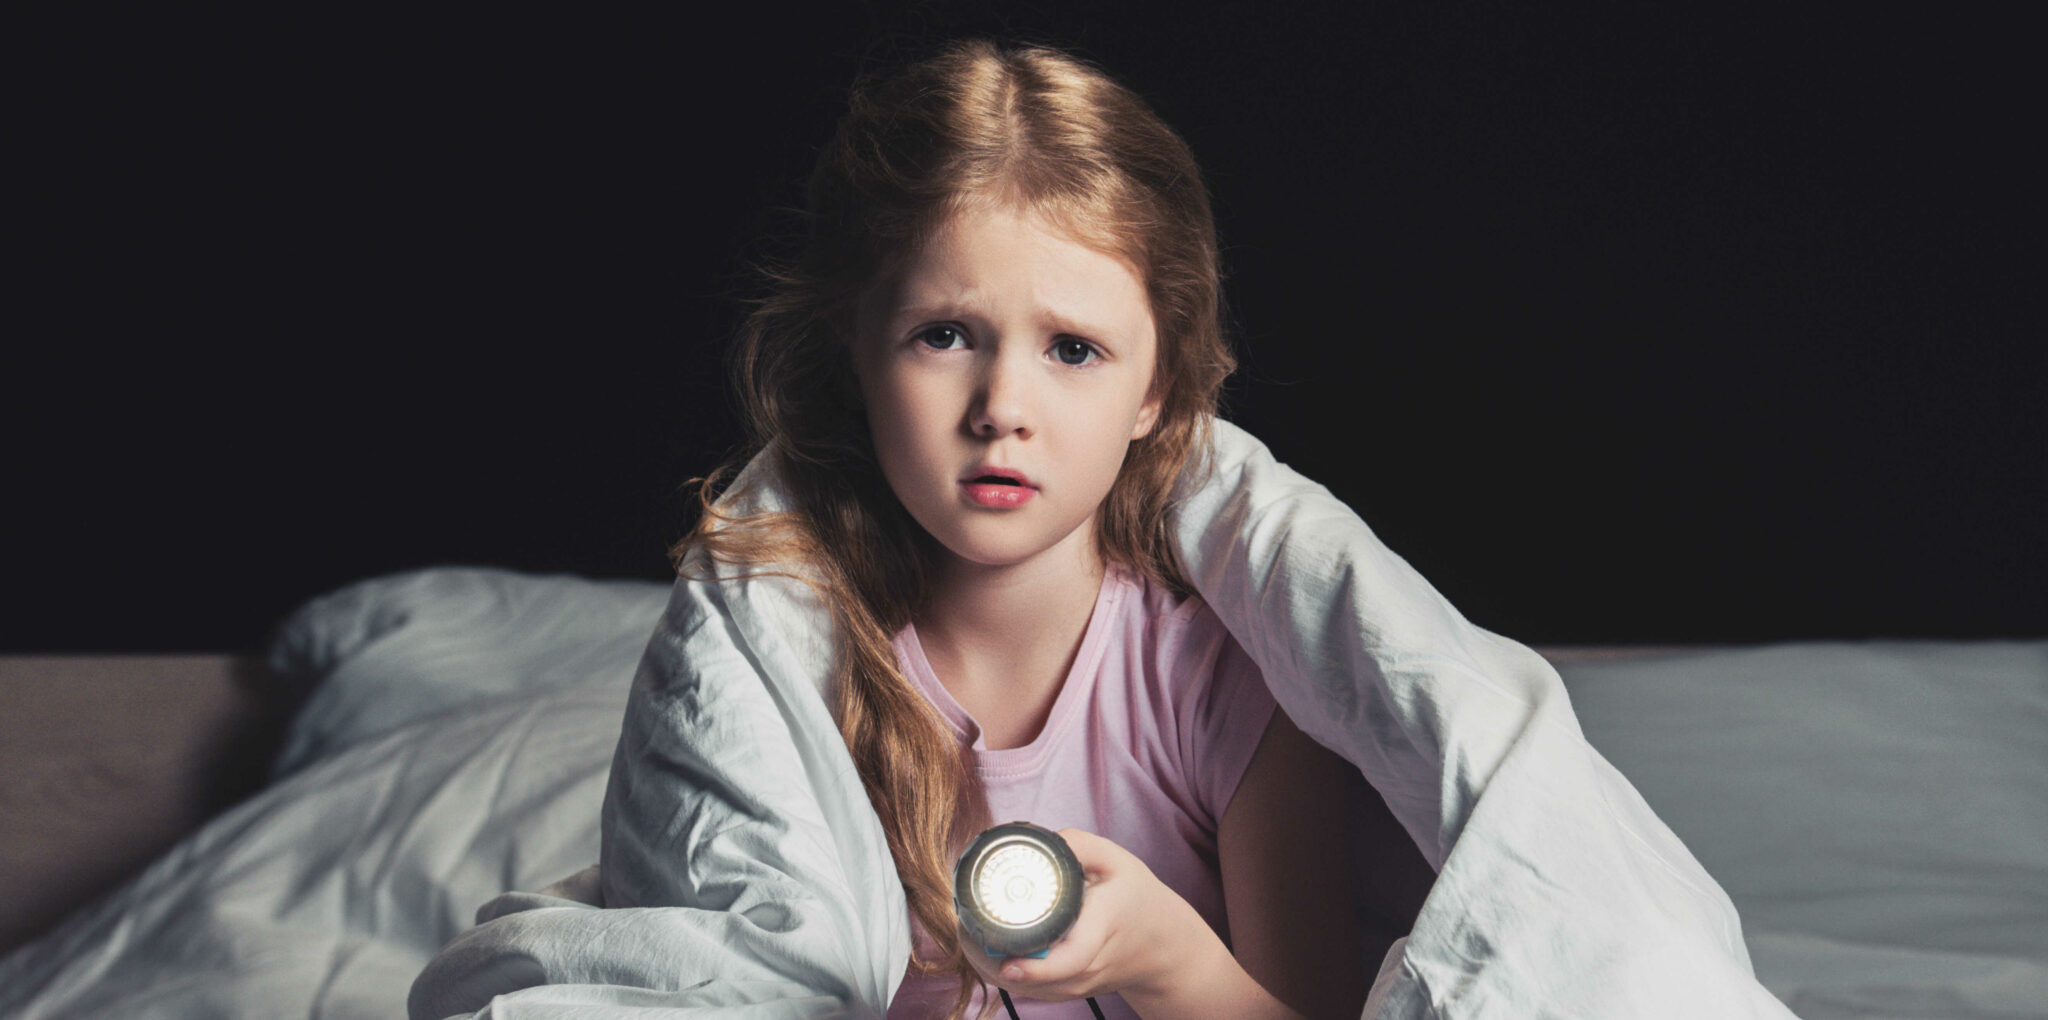 страх темноты в детстве - признак наличия экстрасенсорных способностей